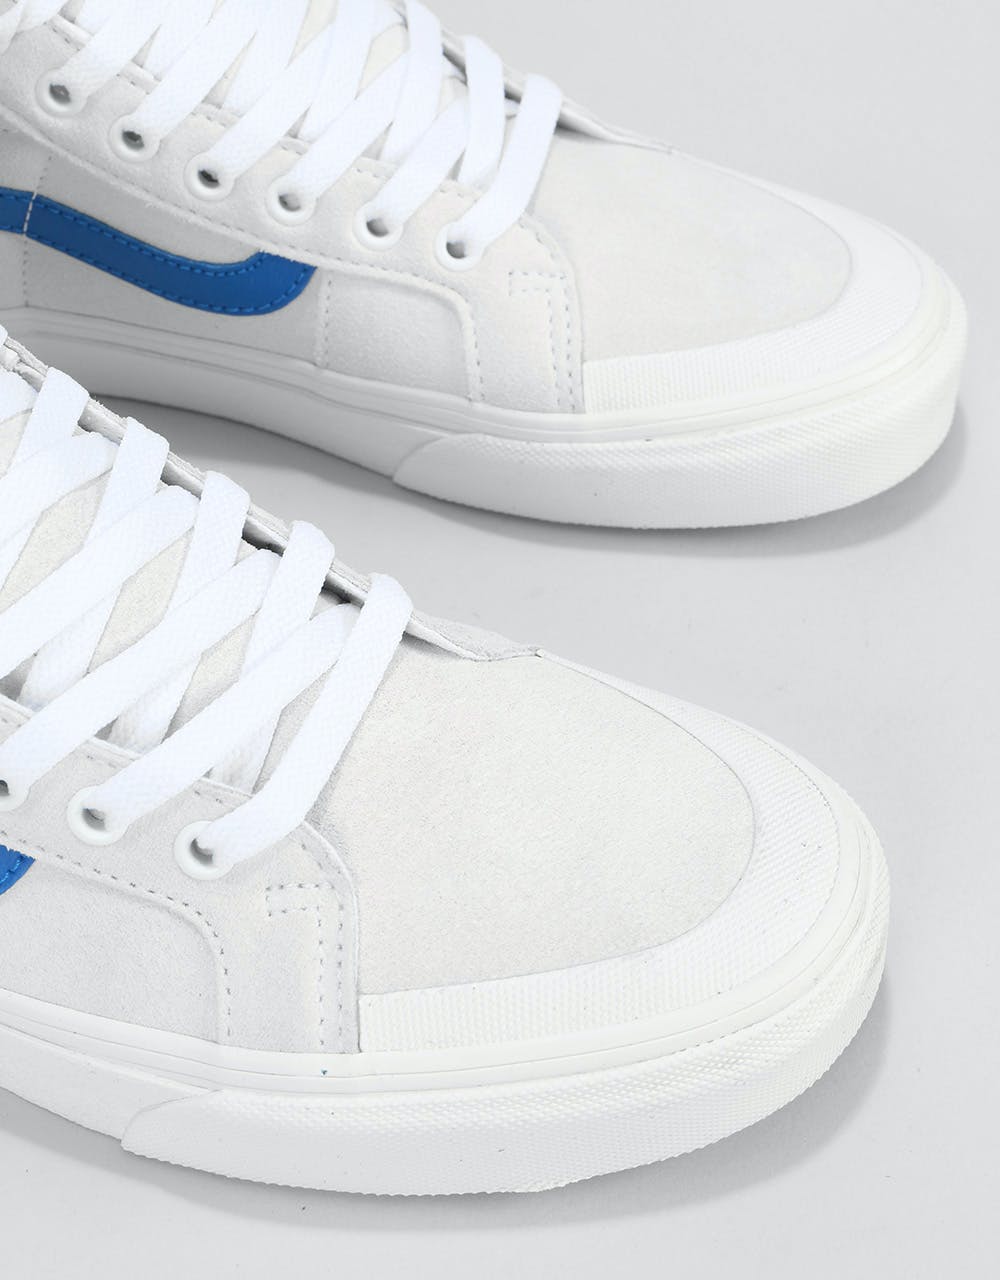 Vans Sk8-Hi Reissue 138 Skate Shoes - True White/Lapis Blue